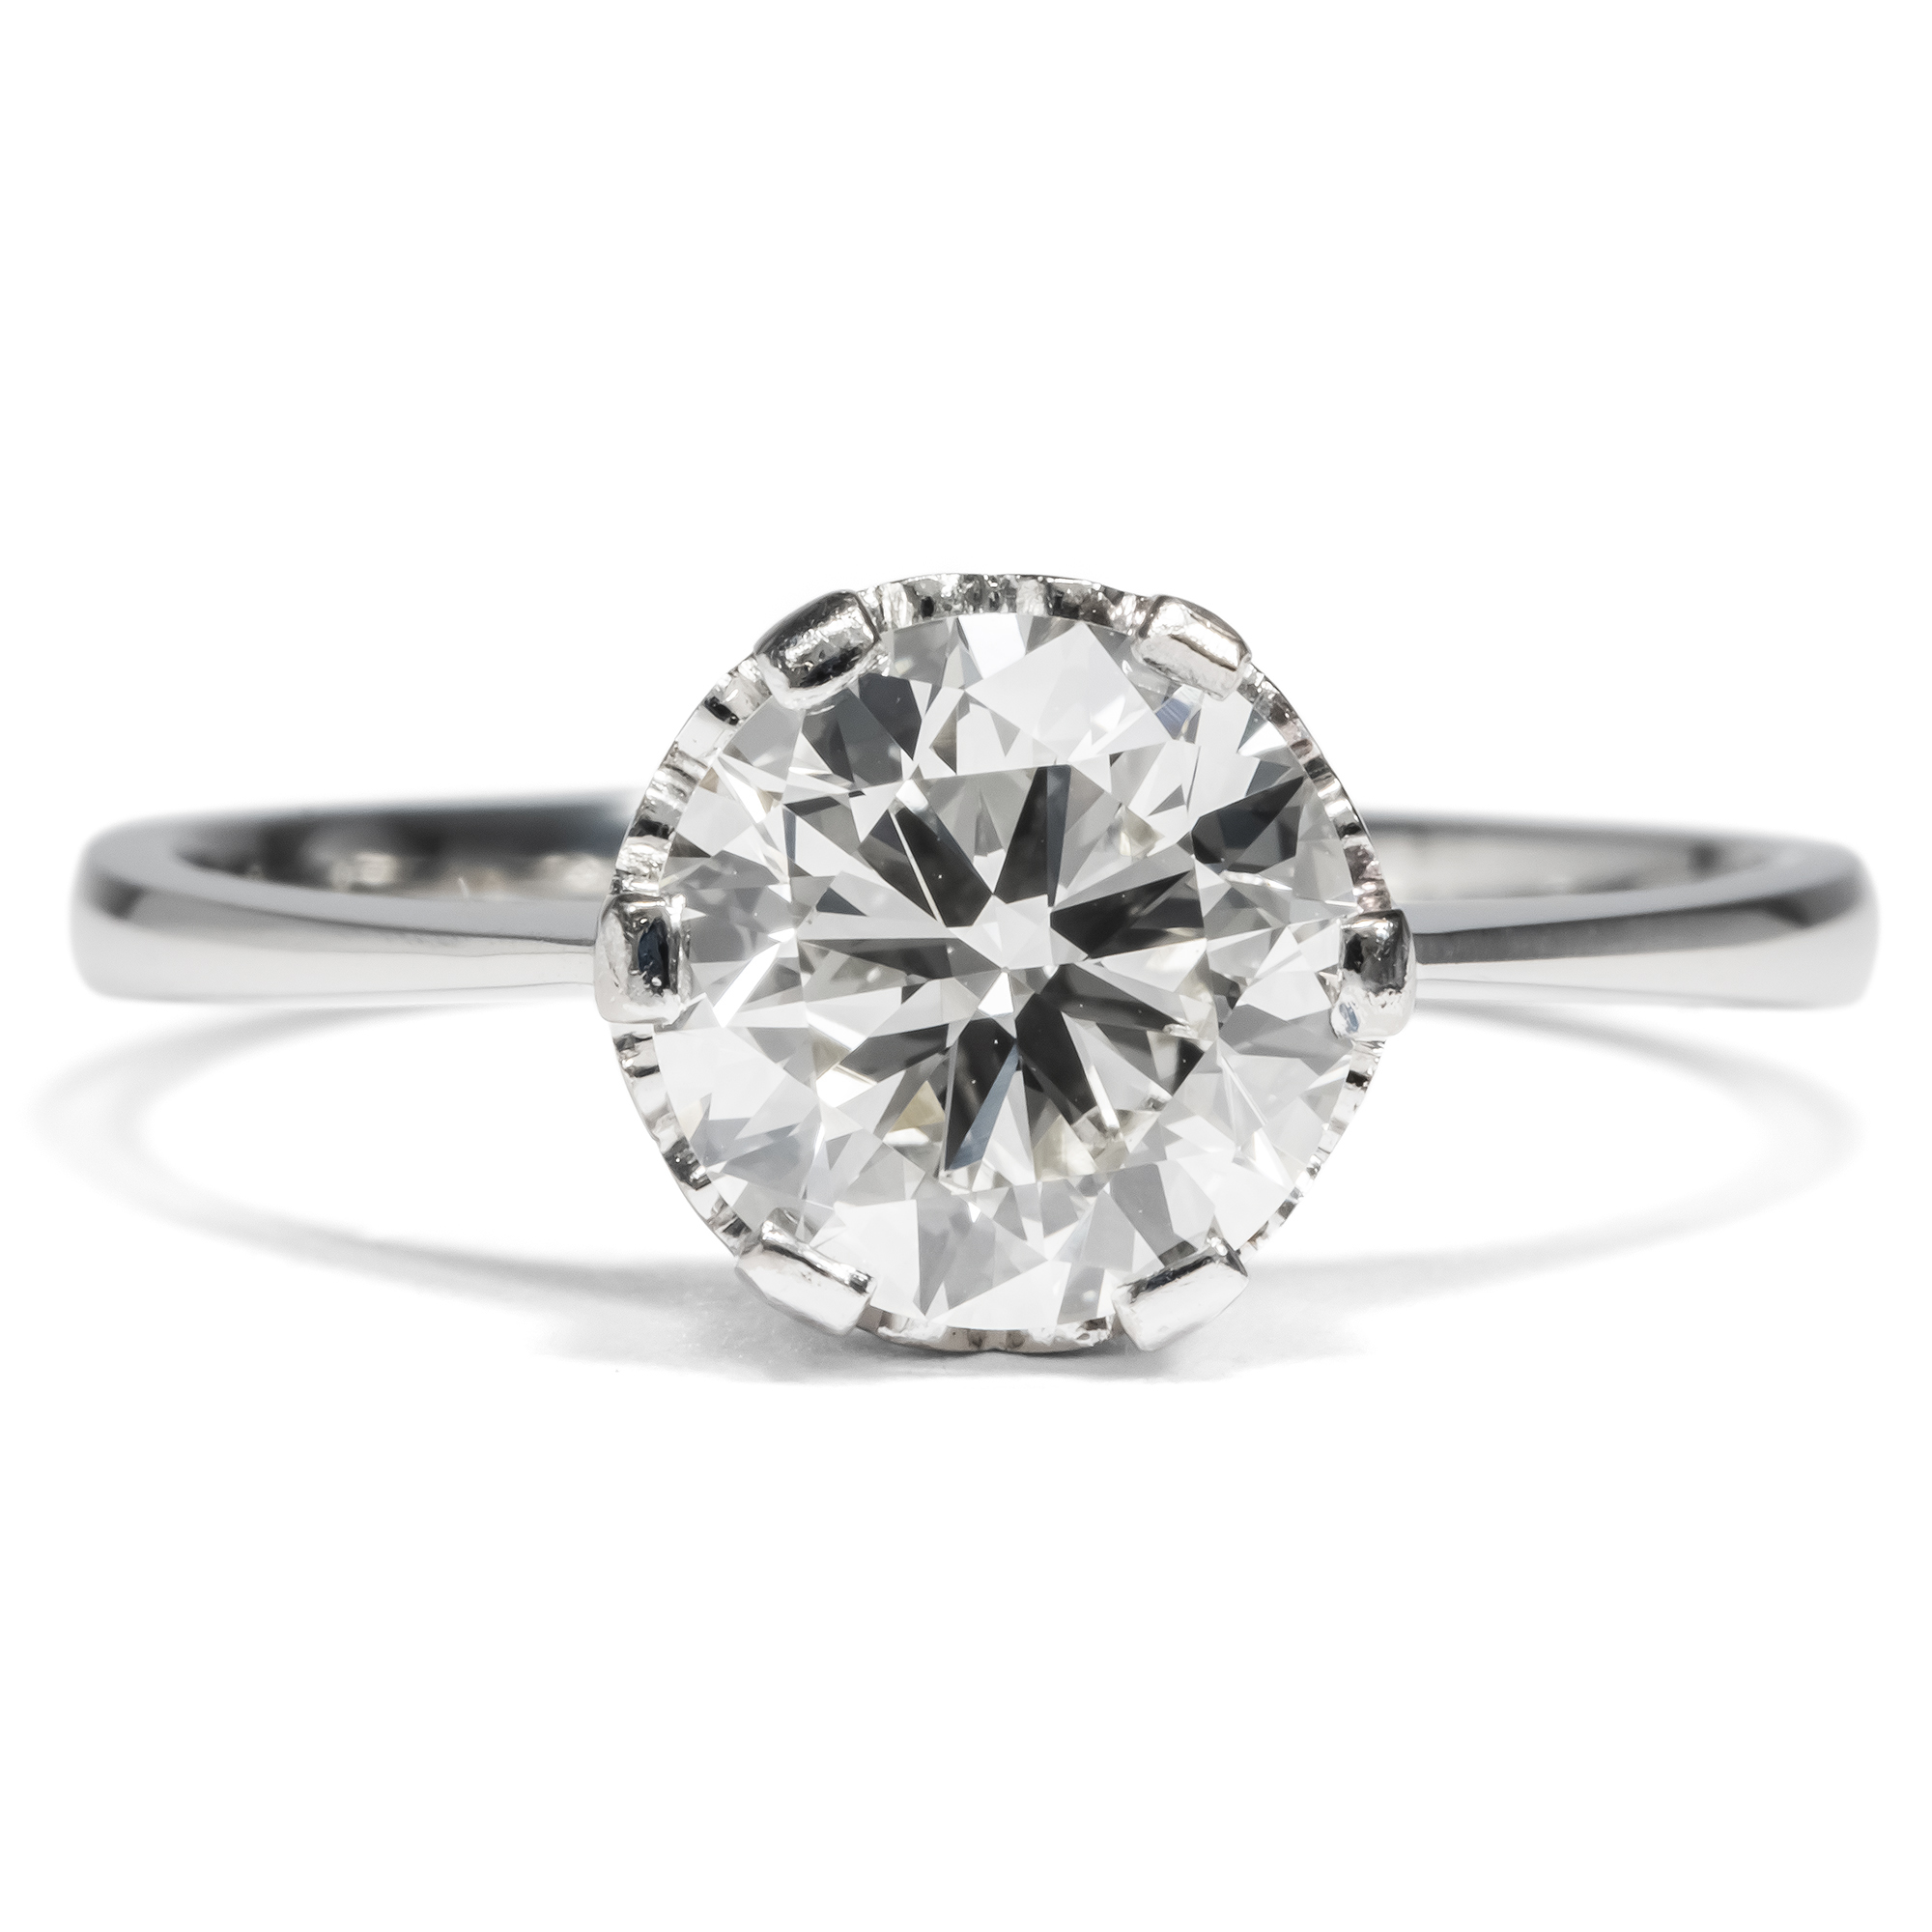 Elegant Vintage Engagement Ring With 1.75 Ct Brilliant Solitaire In Platinum, Circa 1960